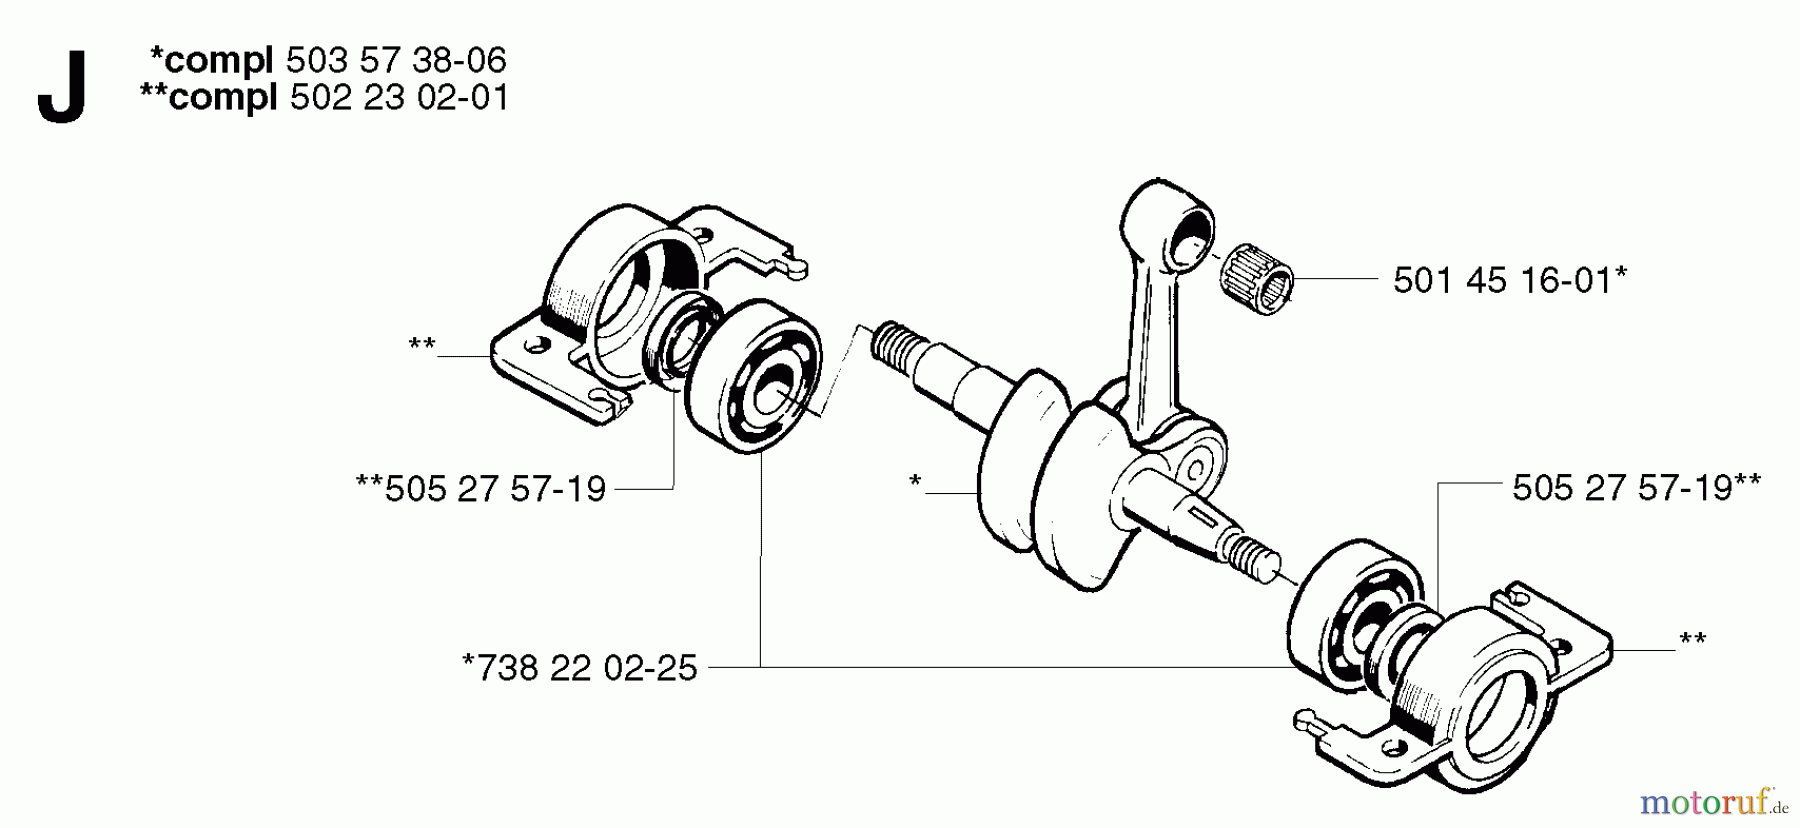  Jonsered Motorsensen, Trimmer RS44 - Jonsered String/Brush Trimmer (2002-08) CRANKSHAFT